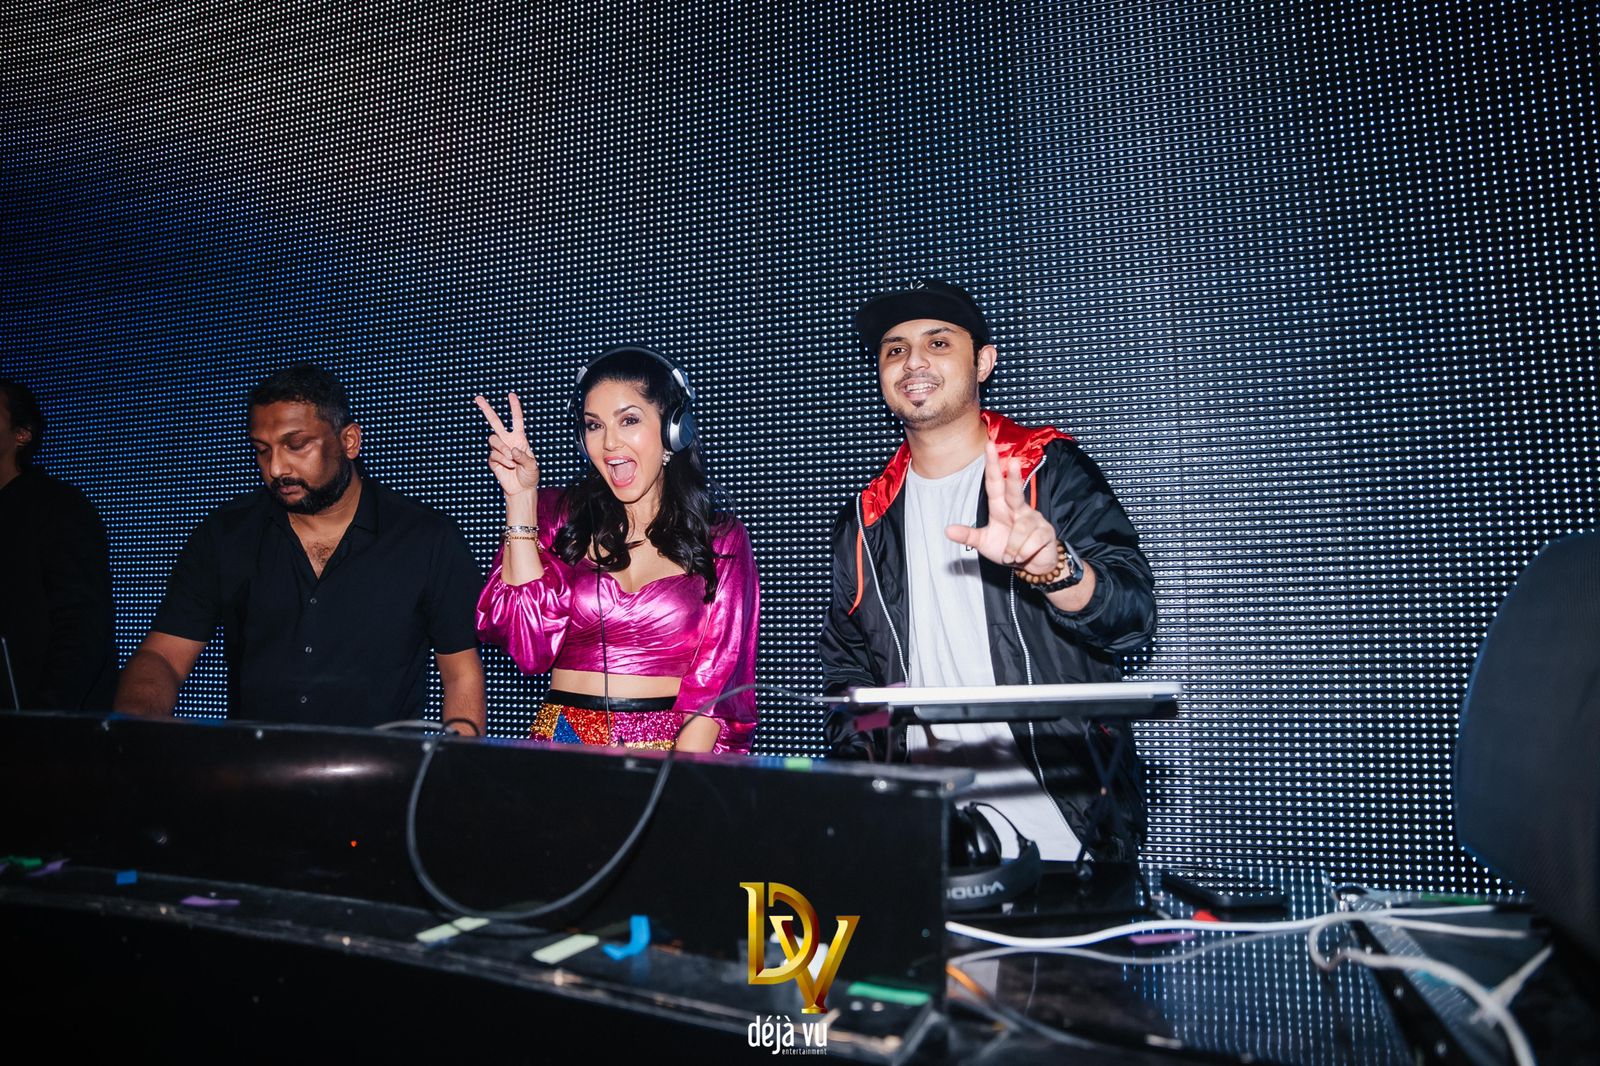 सनी लियोन ने लगाए ठुमके , DJ Raahyl का संगीत बना बॉलीवुड के लोकप्रिय DJ